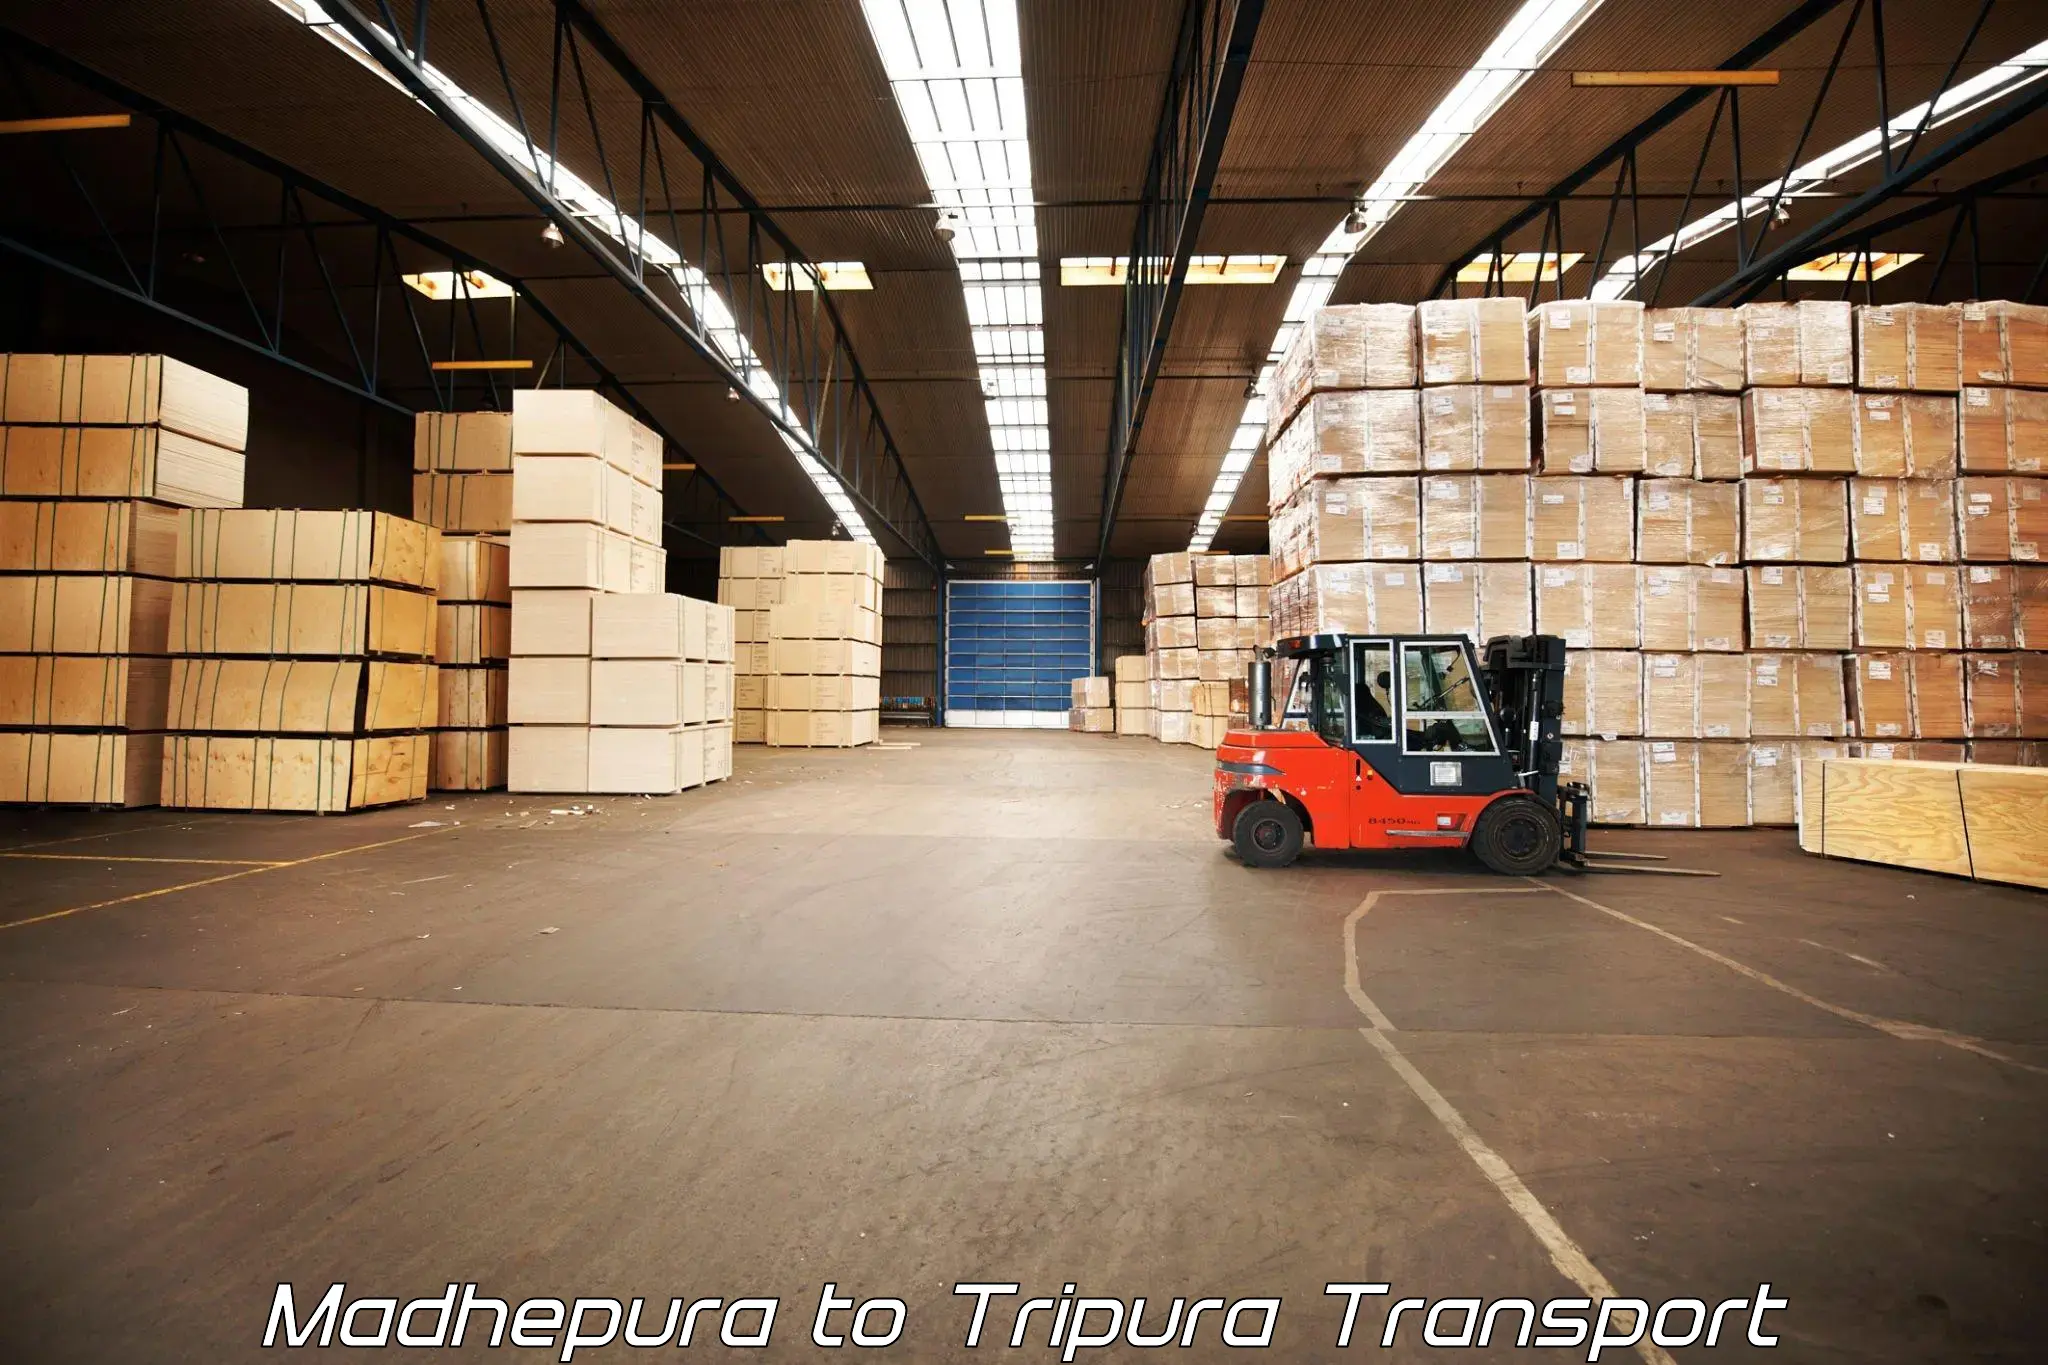 Commercial transport service Madhepura to Santirbazar